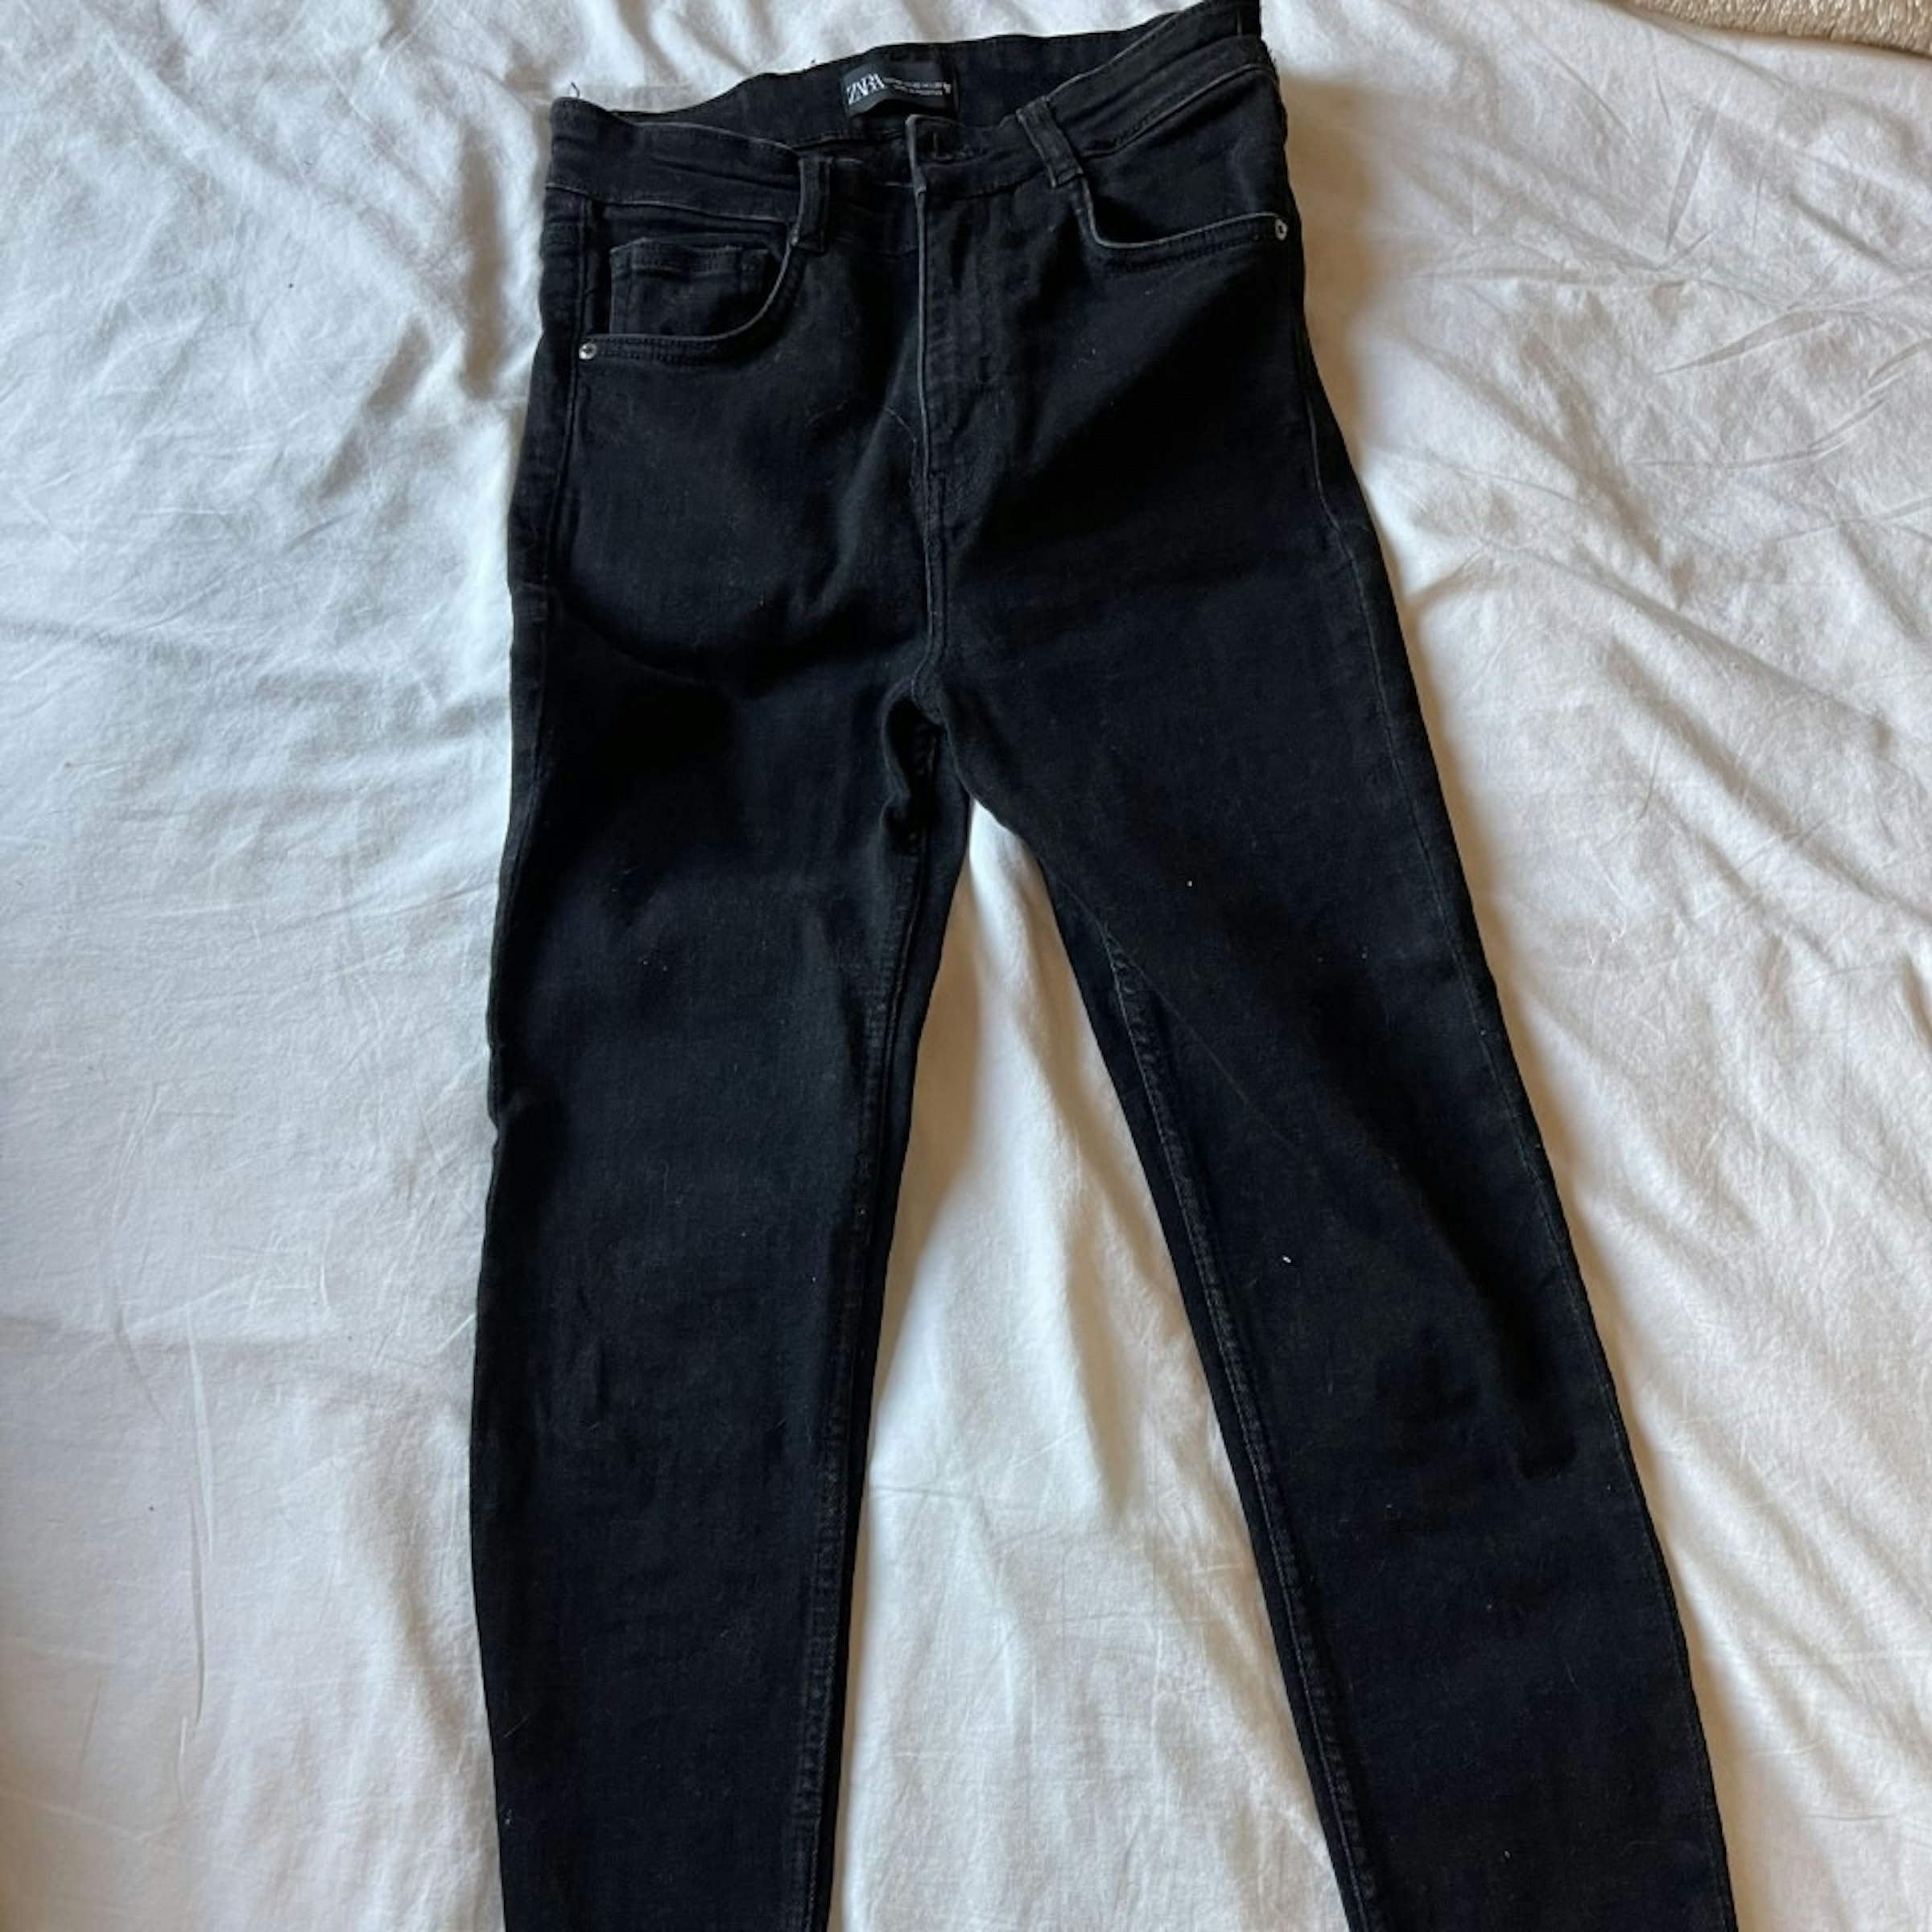 Júnior guerra Desconocido pantalones negros - $300.00 | Gloset